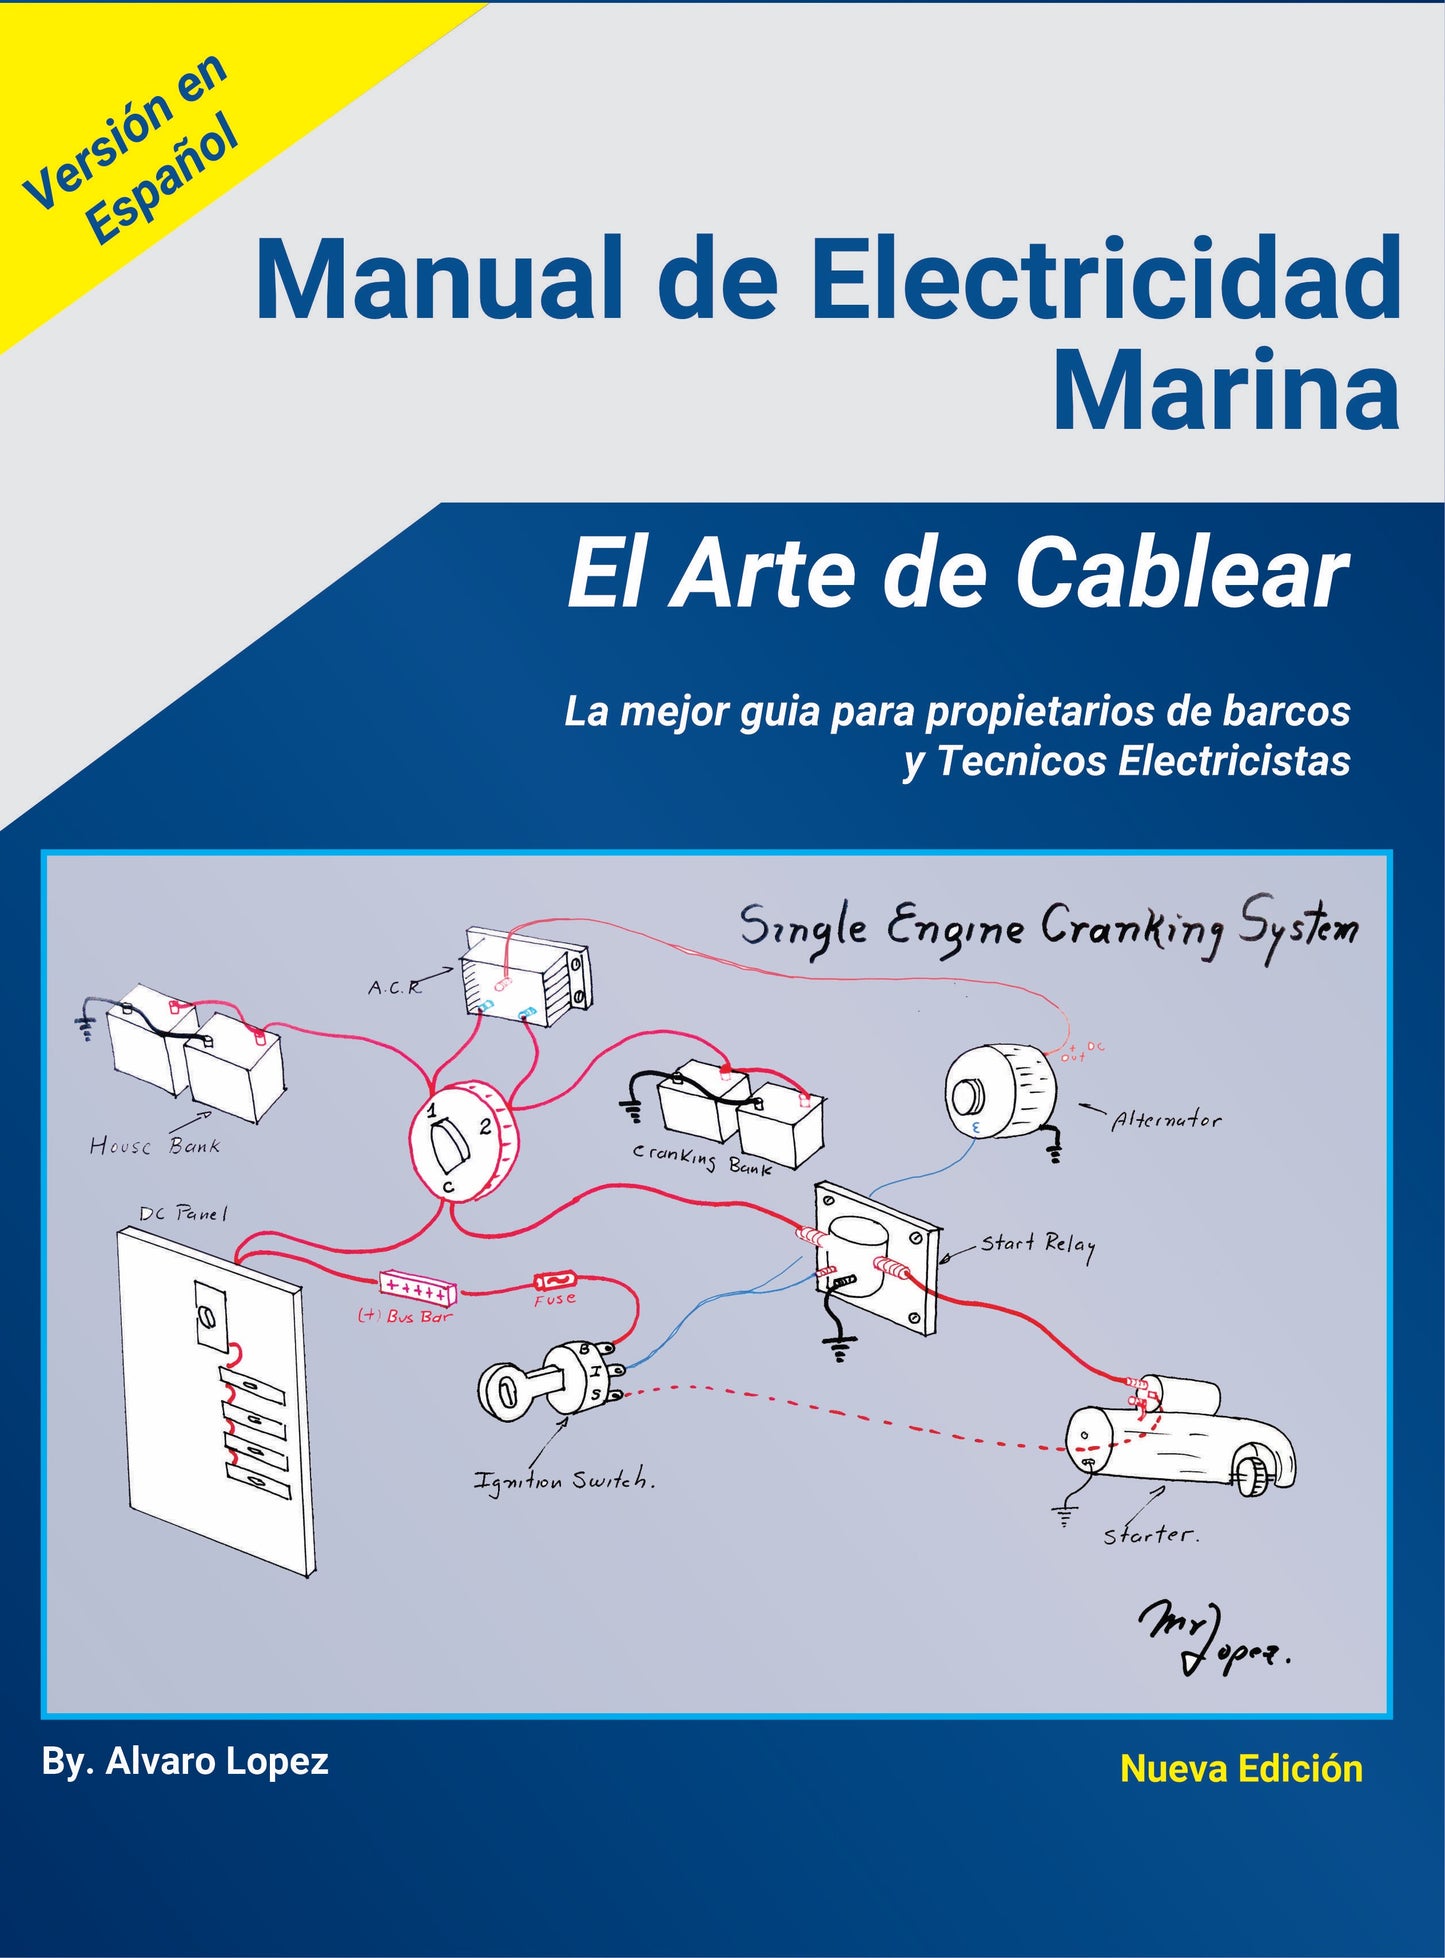 Manual de Electricidad Marina